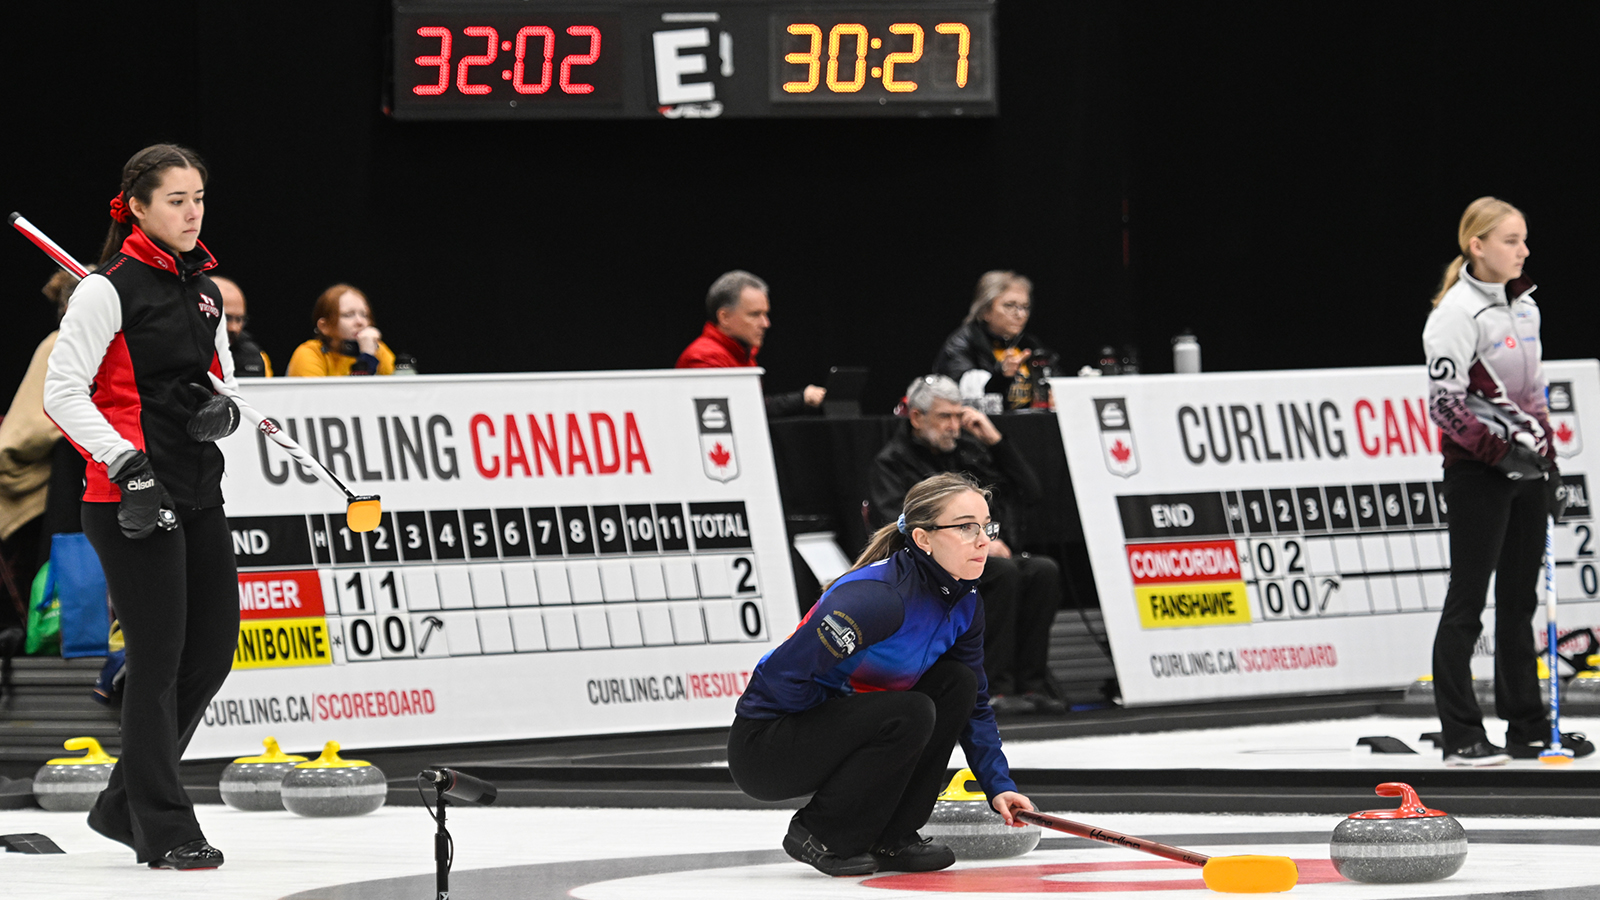 Le tableau des éliminatoires est confirmé au Championnat canadien ACSC Curling Canada